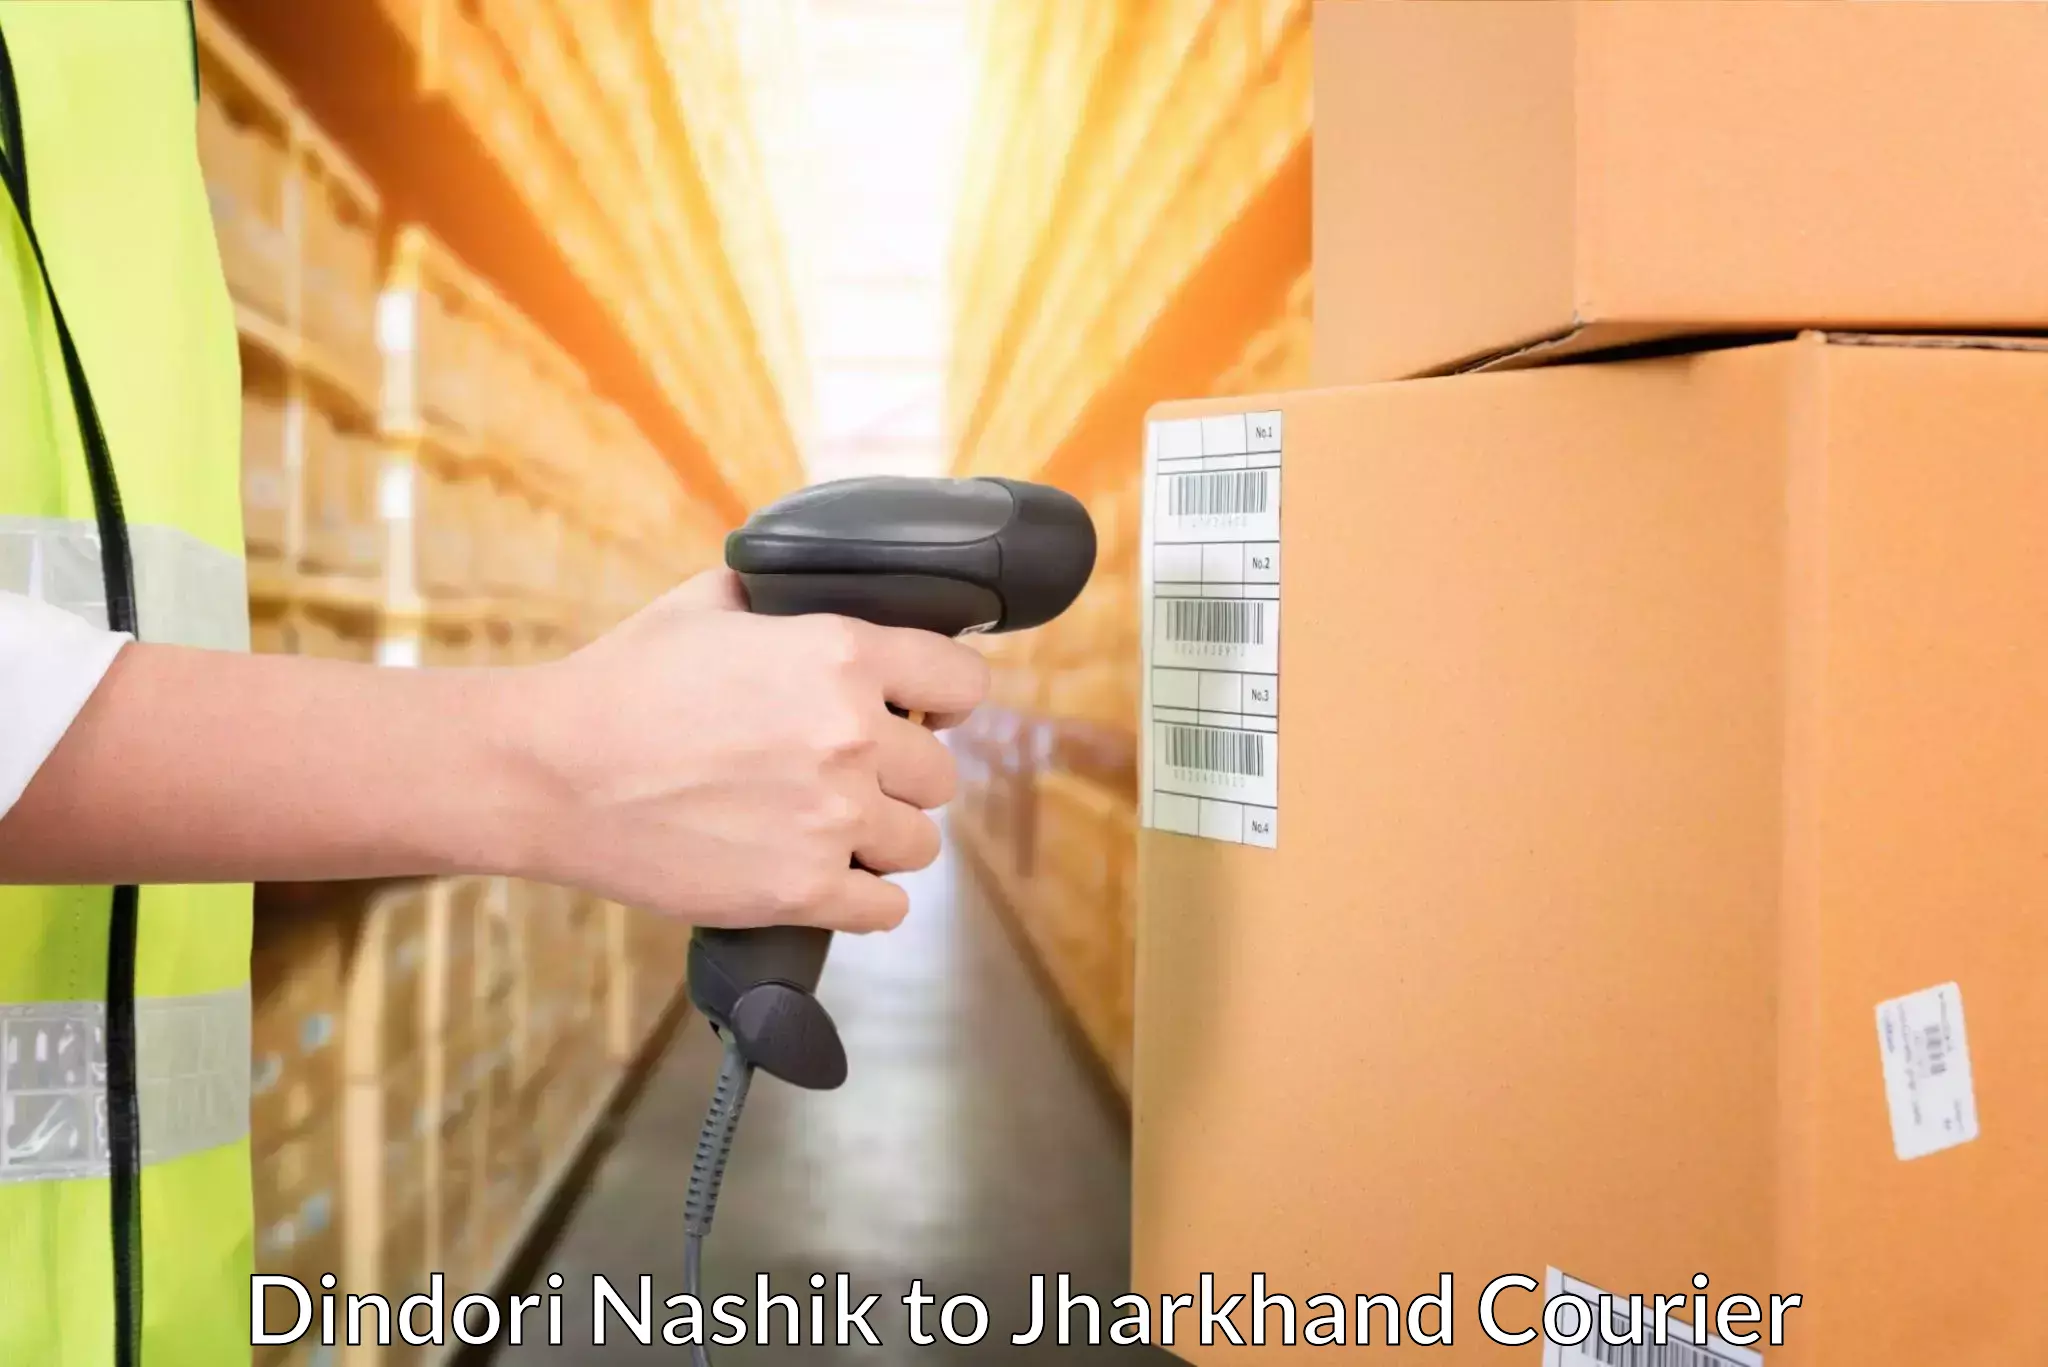 Urgent courier needs Dindori Nashik to Giridih